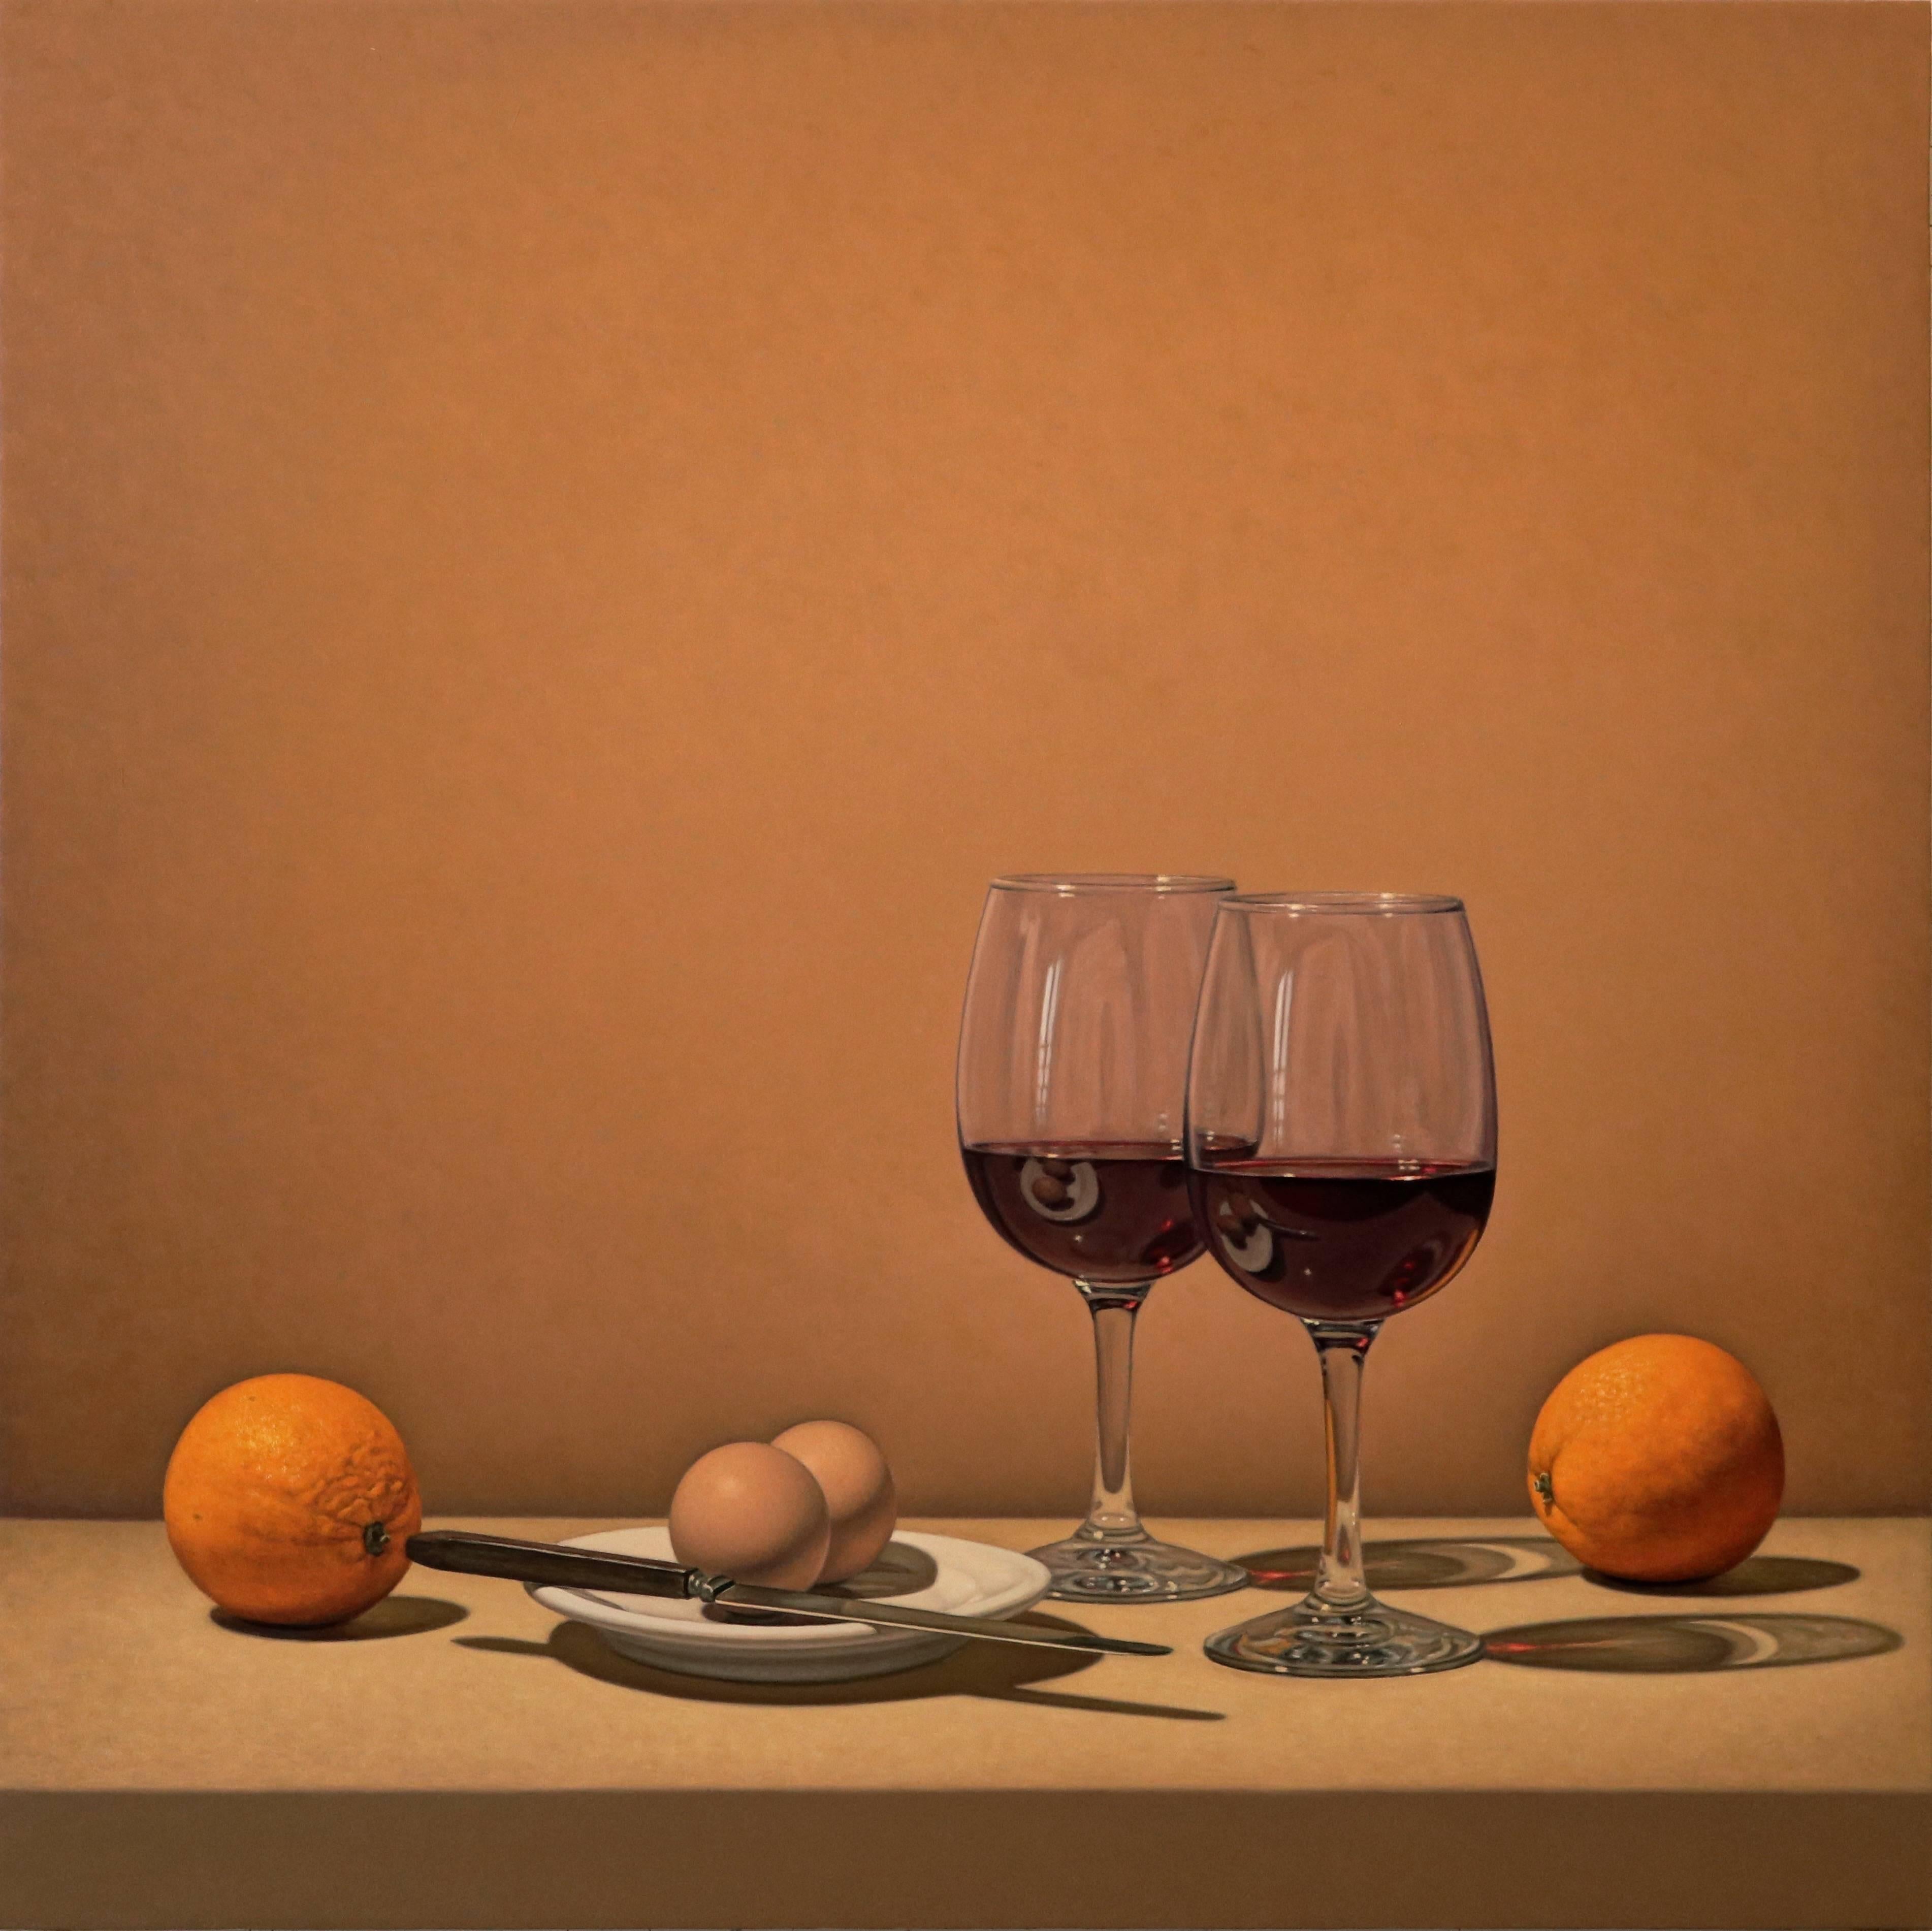 Les œufs, le vin et les oranges - Painting de Tom Gregg